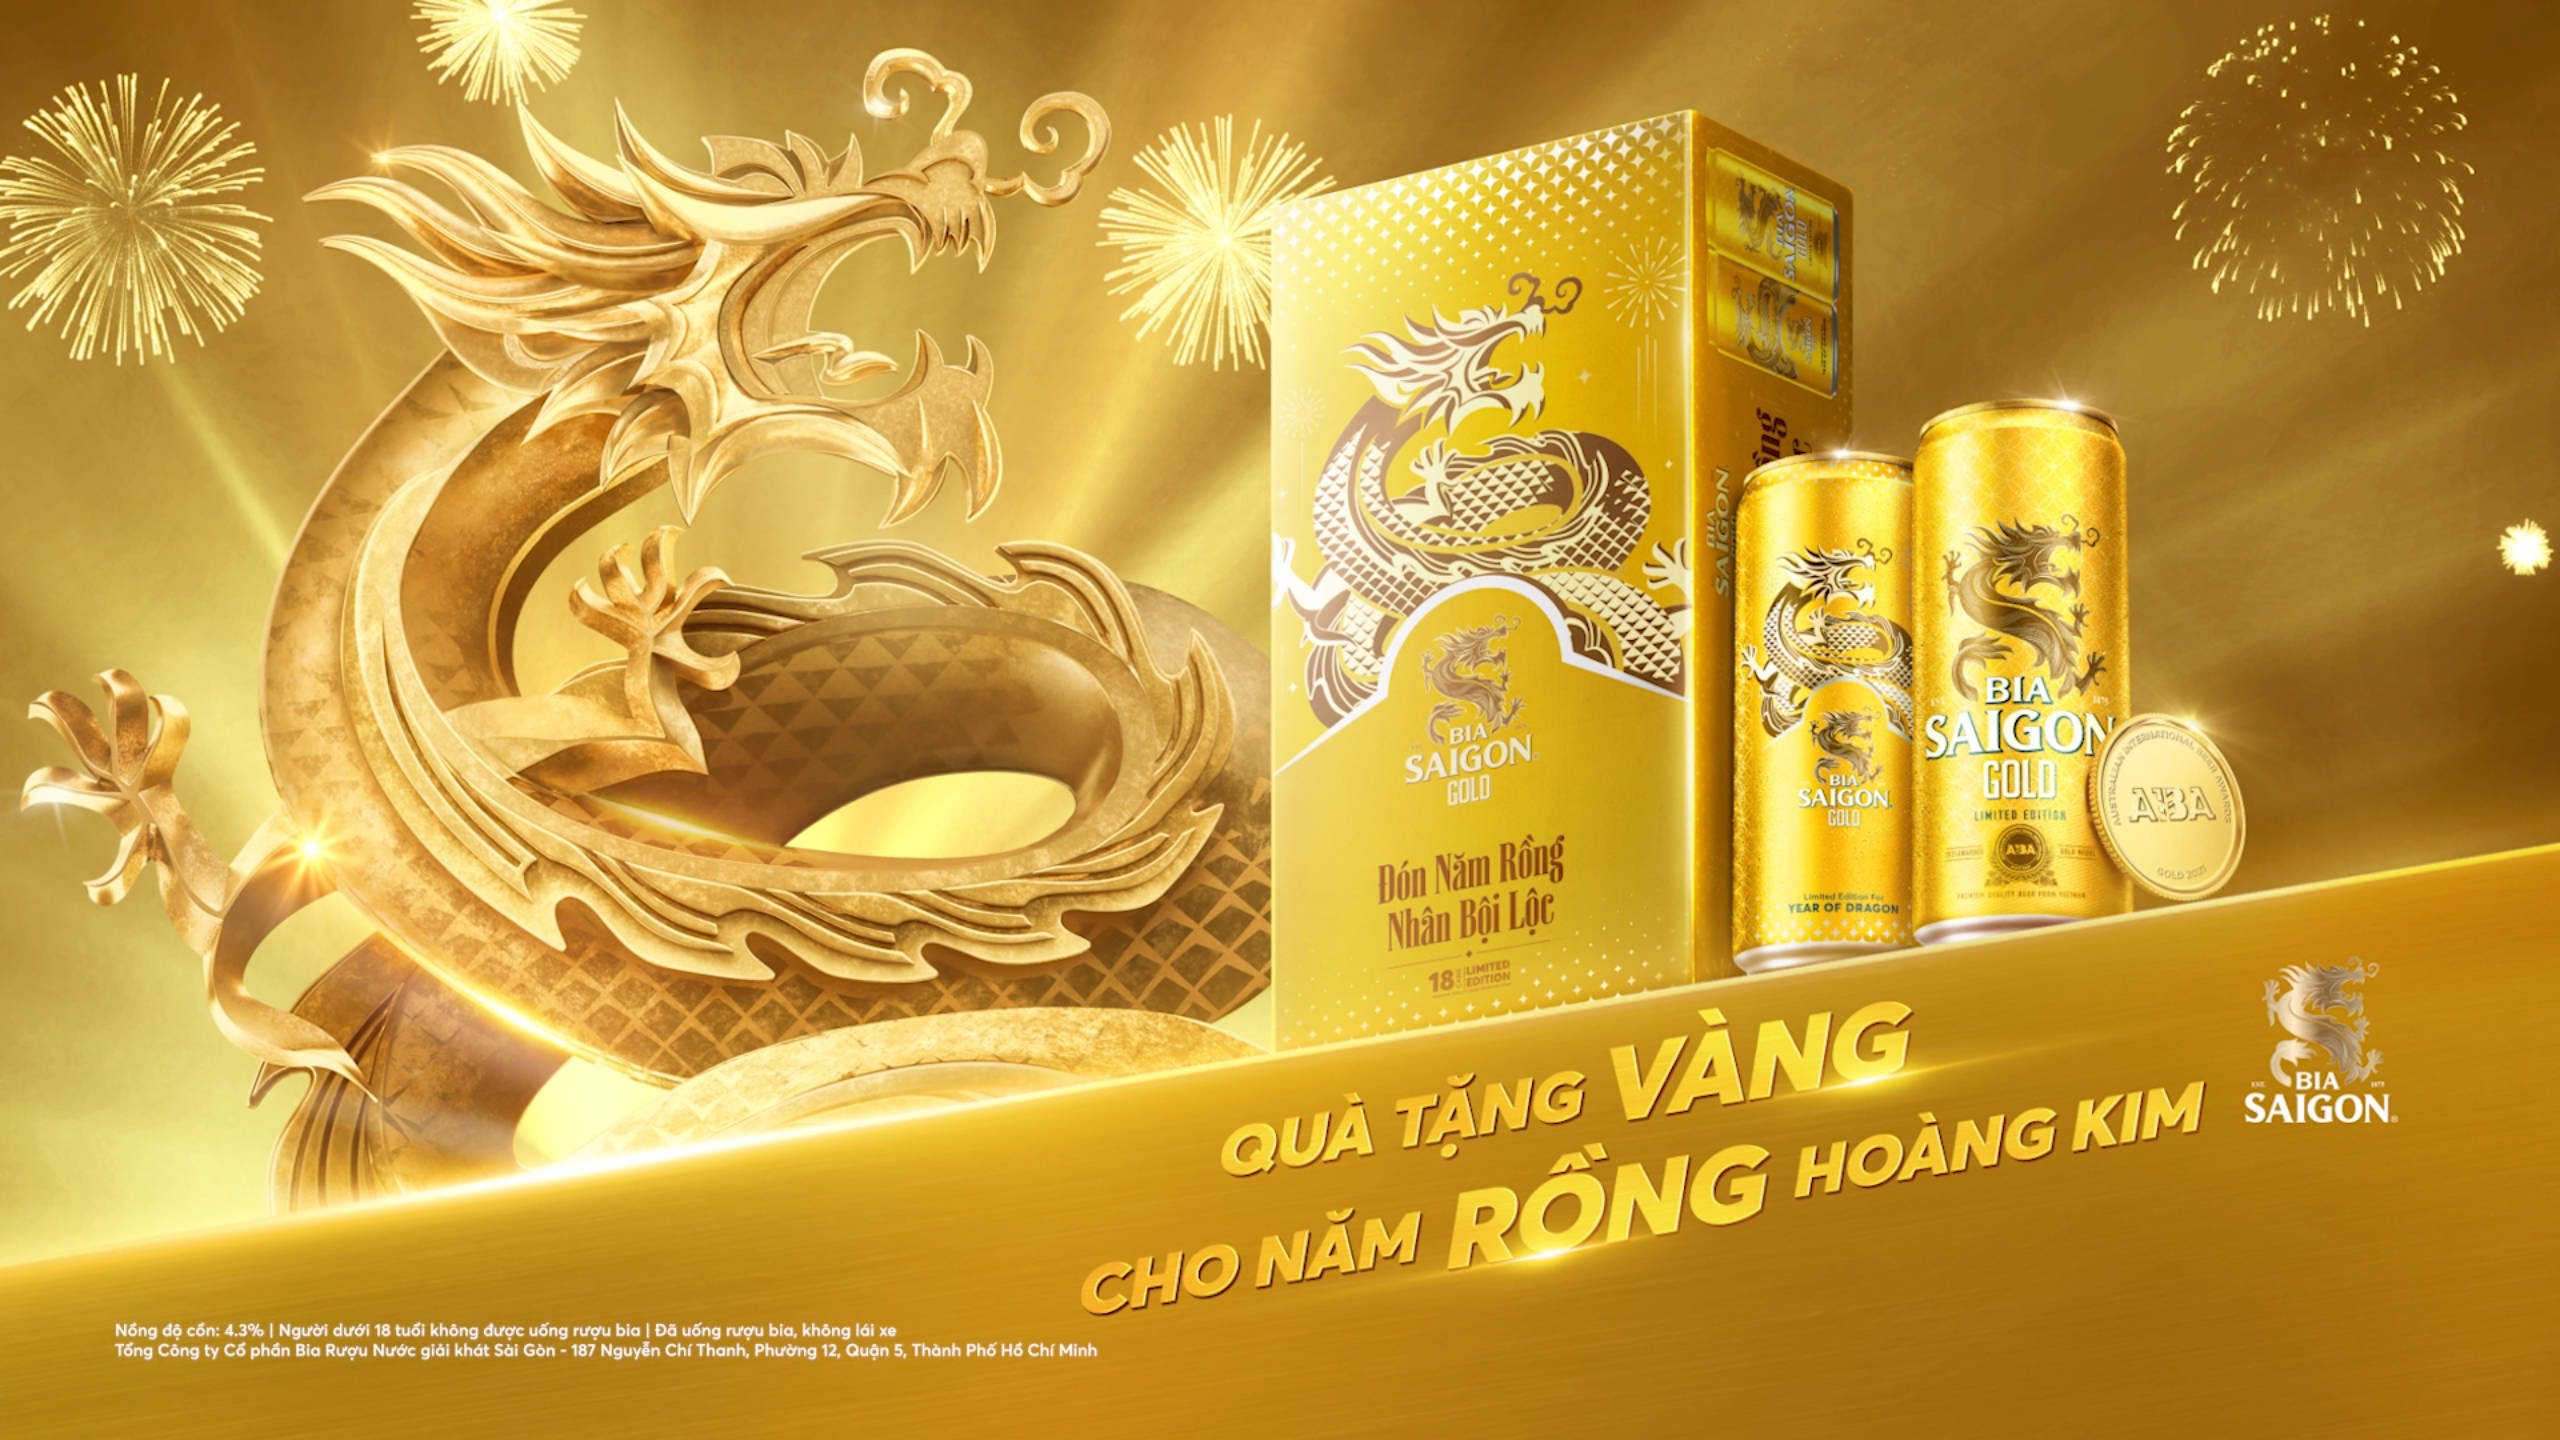 Bia Saigon Gold - Quà tặng vàng cho năm rồng hoàng kim